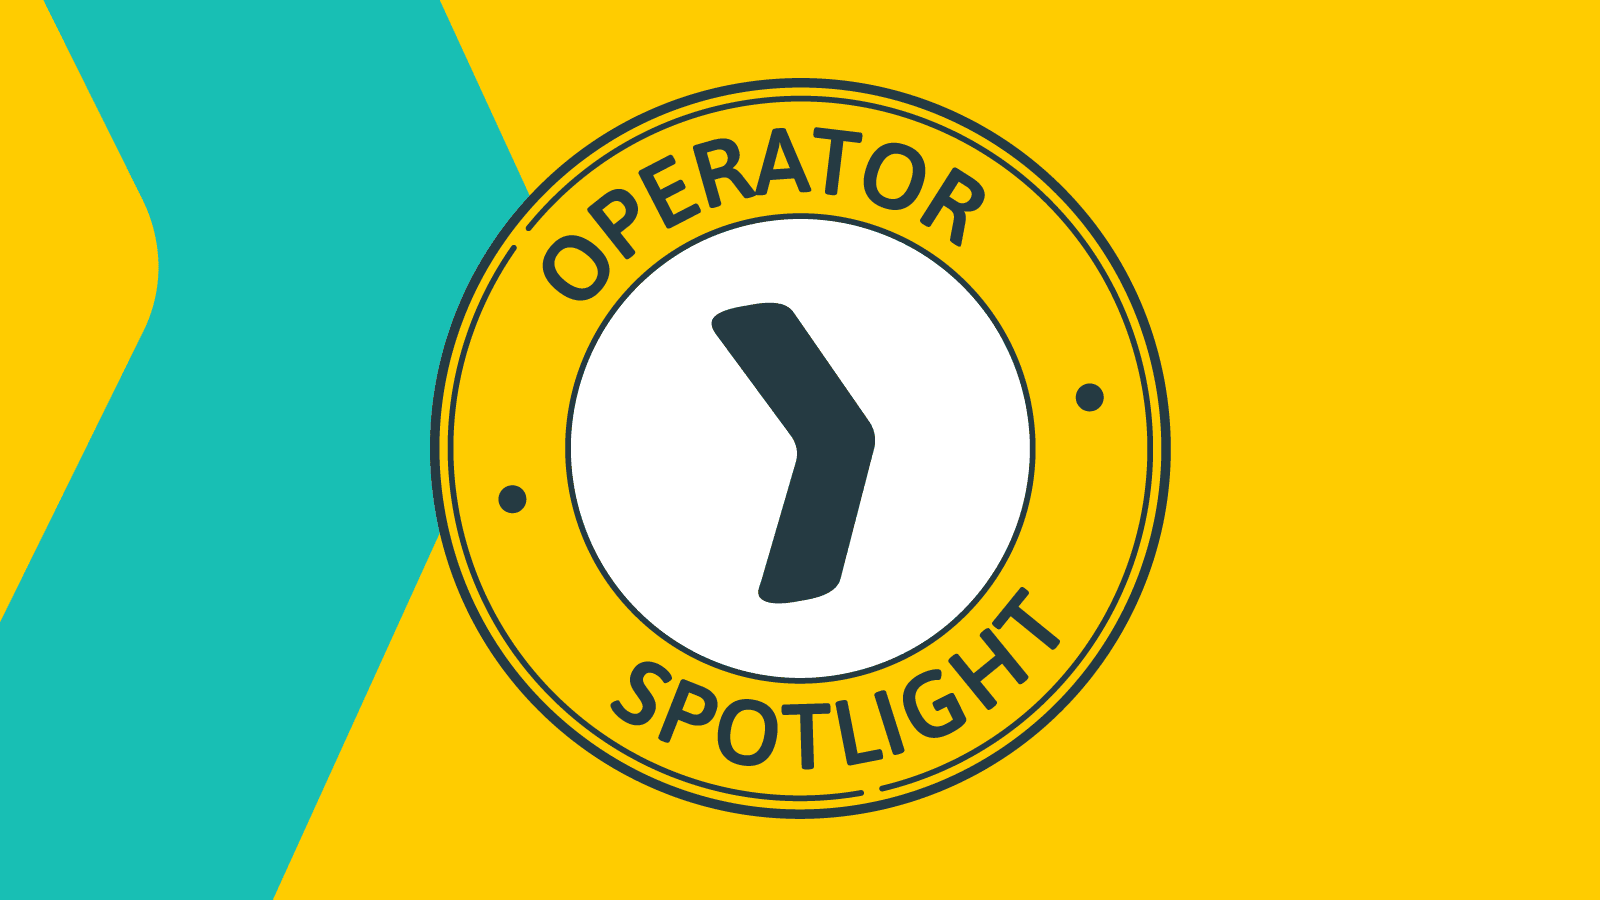 Operator Spotlight illustration